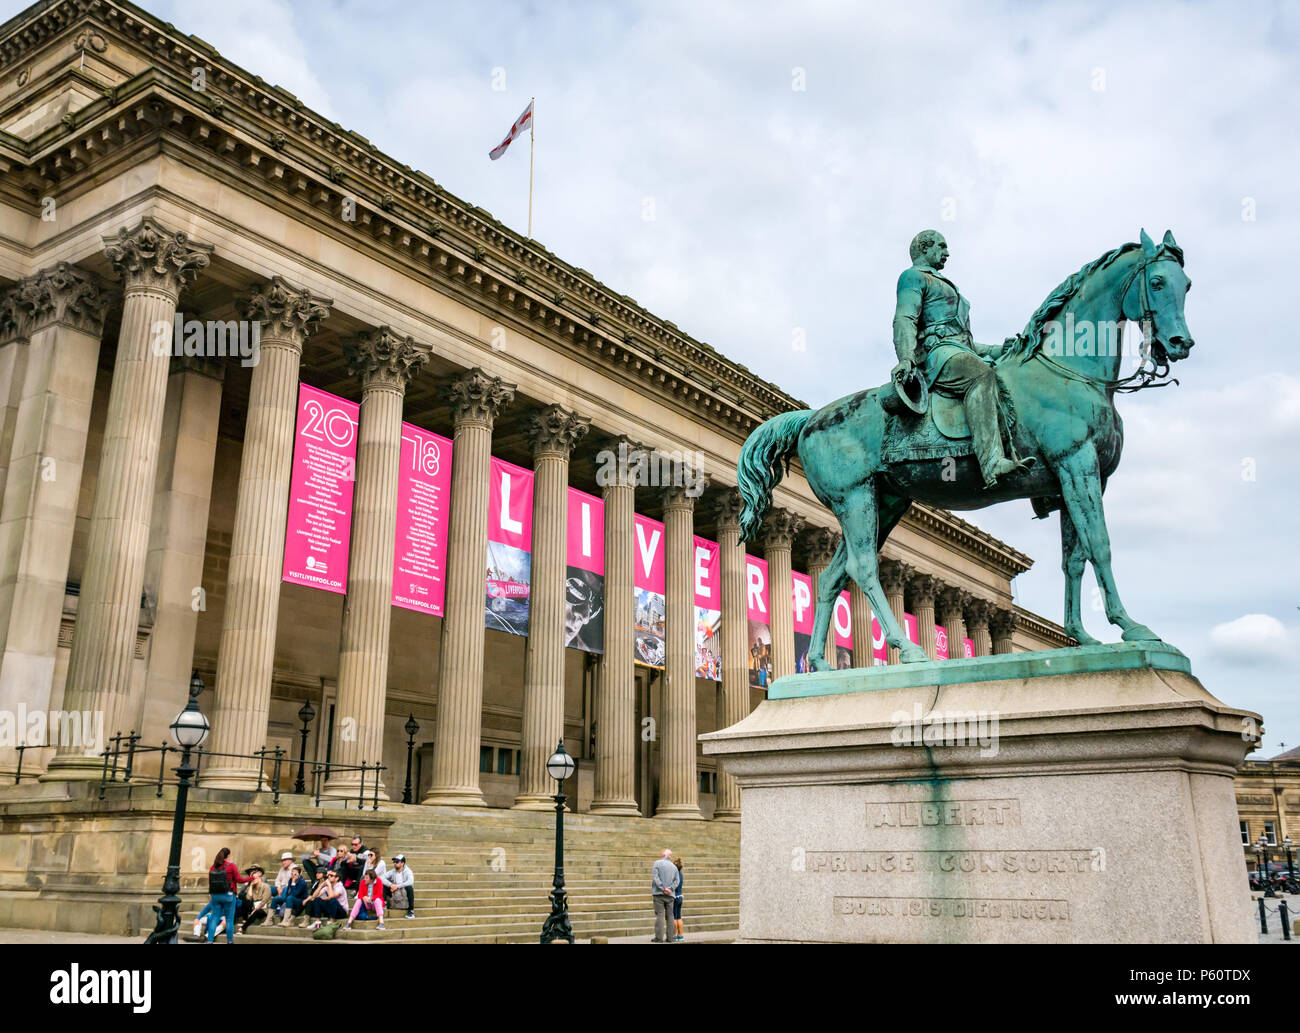 St George's Hall, con il nome di Liverpool sulla grande banner rosa e la statua del Principe Alberto principe consorte su un cavallo, Liverpool, England, Regno Unito Foto Stock